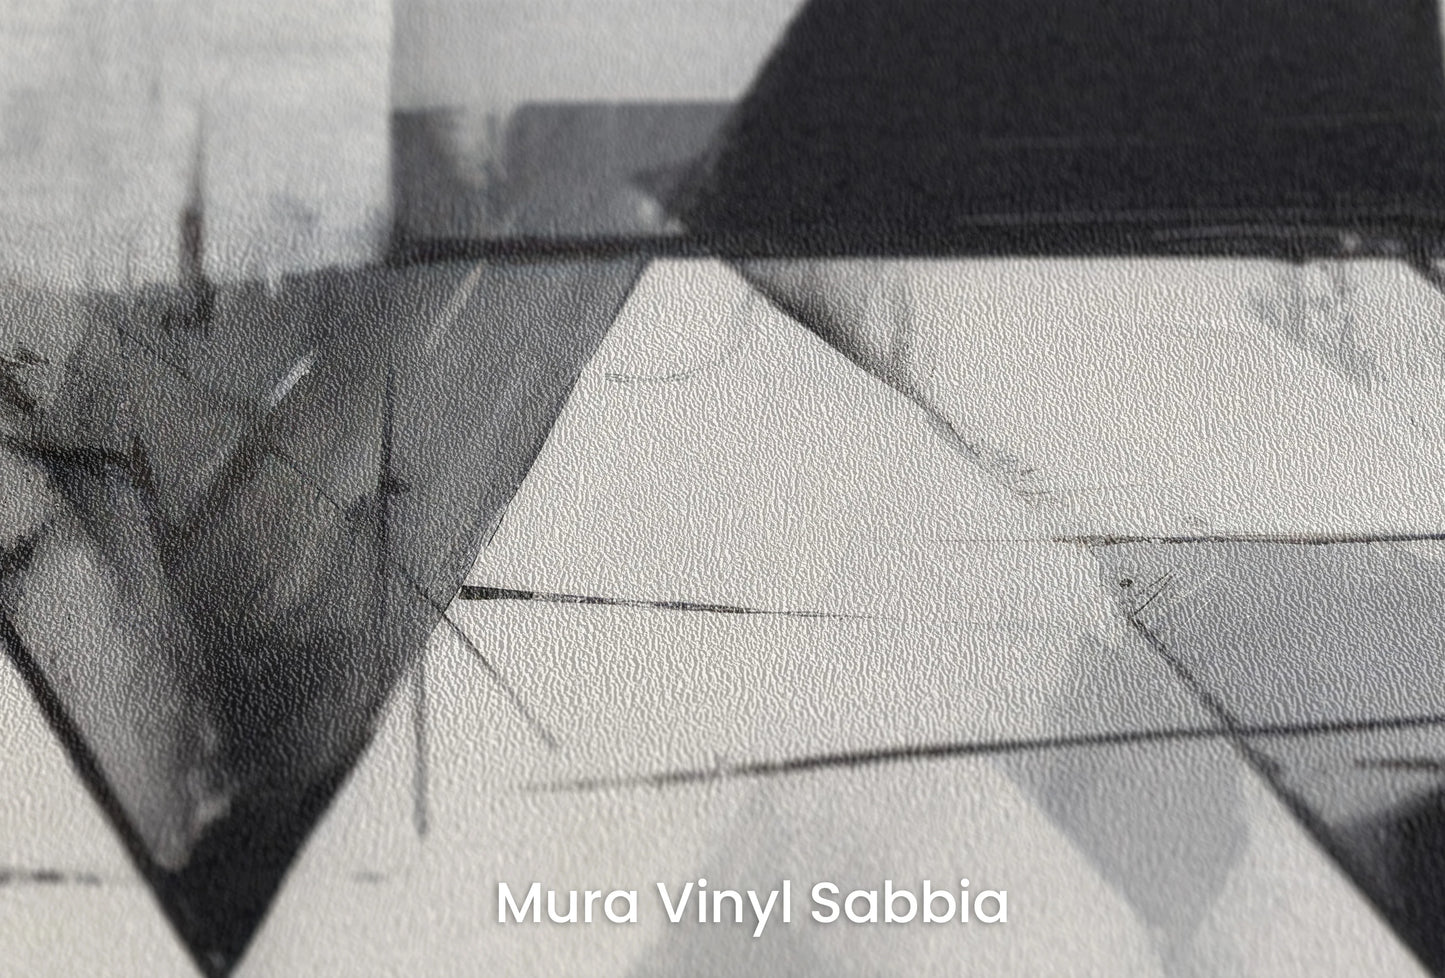 Zbliżenie na artystyczną fototapetę o nazwie Angular Dynamics na podłożu Mura Vinyl Sabbia struktura grubego ziarna piasku.